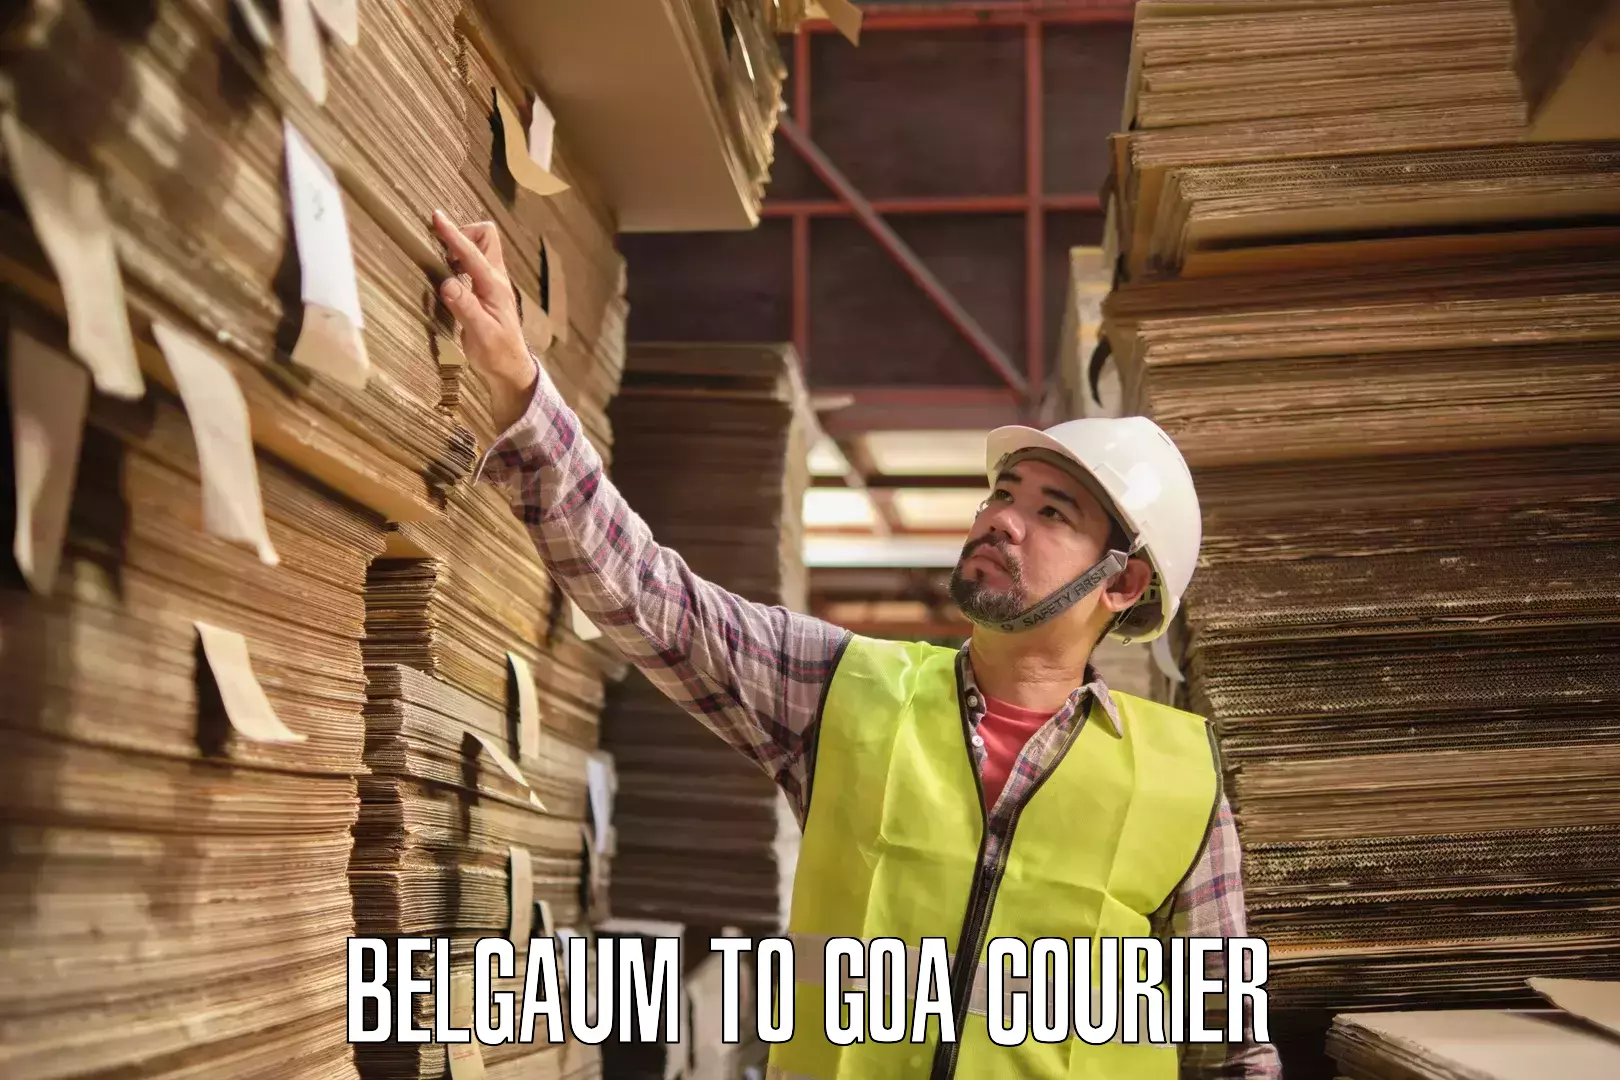 Reliable courier service Belgaum to South Goa